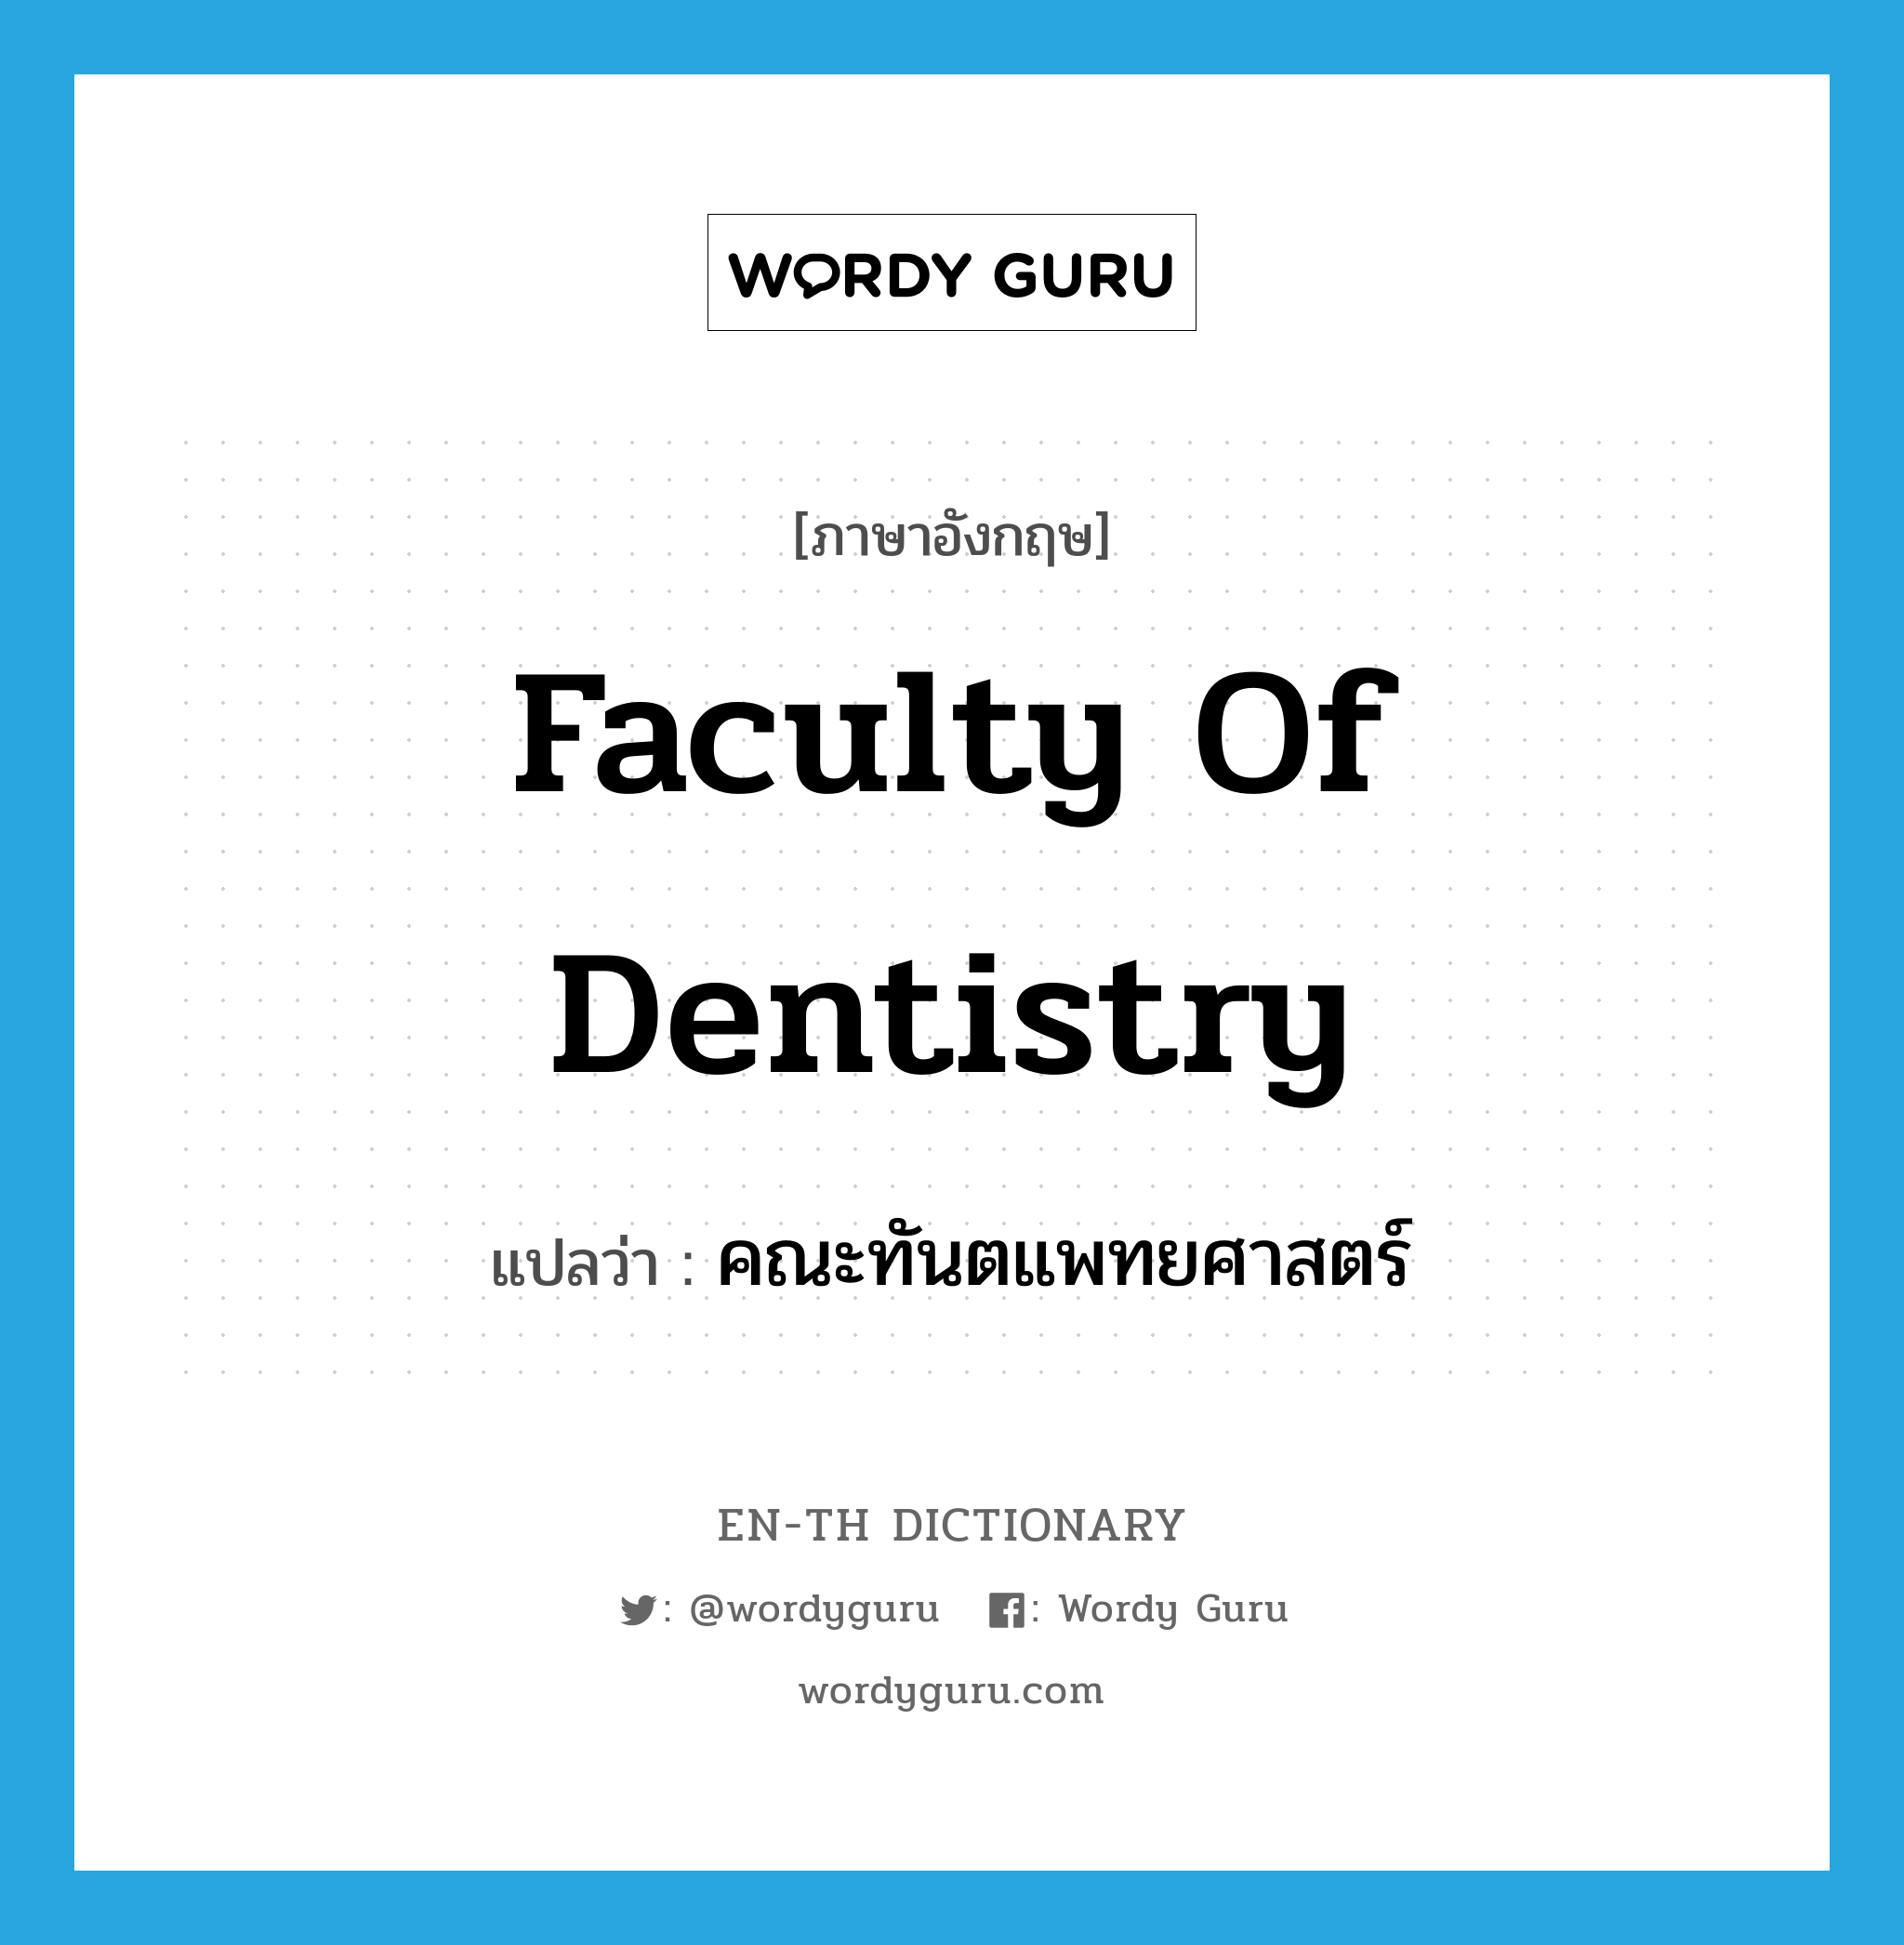 คณะทันตแพทยศาสตร์ ภาษาอังกฤษ?, คำศัพท์ภาษาอังกฤษ คณะทันตแพทยศาสตร์ แปลว่า Faculty of Dentistry ประเภท N หมวด N